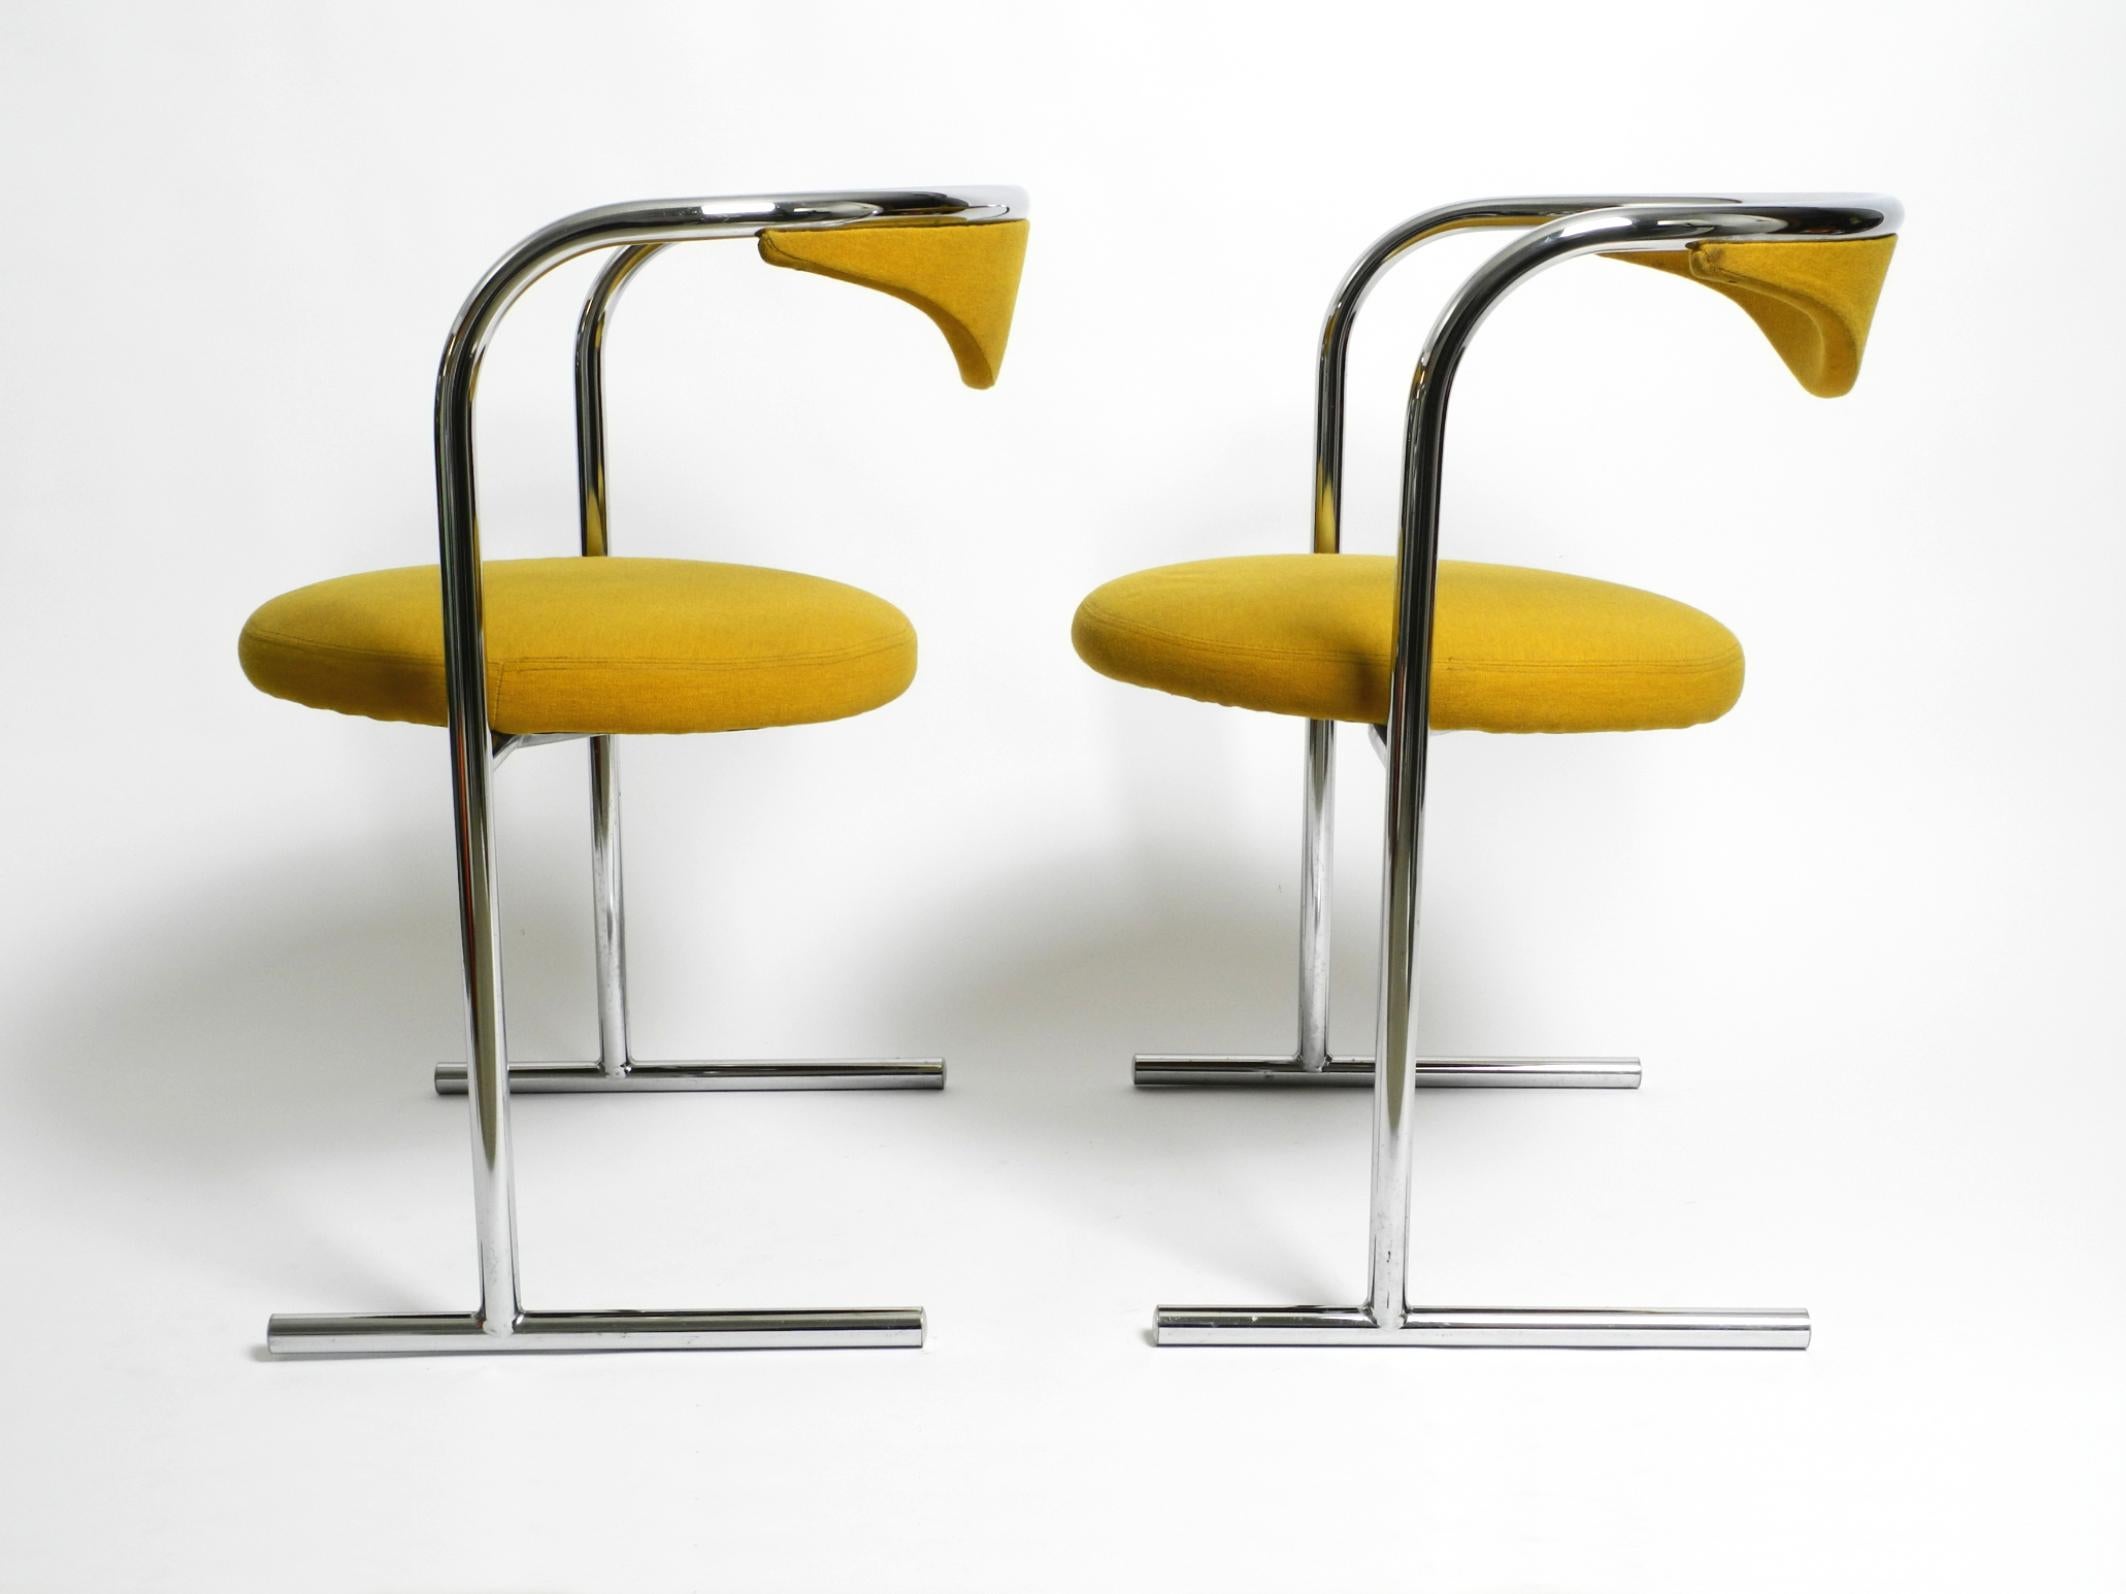 Zwei gepolsterte Original-Stahlrohrstühle aus den 1970er Jahren von Hanno von Gustedt für Thonet, Modell S30.
Großartiges, hochwertiges Space Age Design. Hergestellt in Deutschland.
Ausgezeichnet mit dem IF Design Award im Jahr 1974.
Das Gestell ist